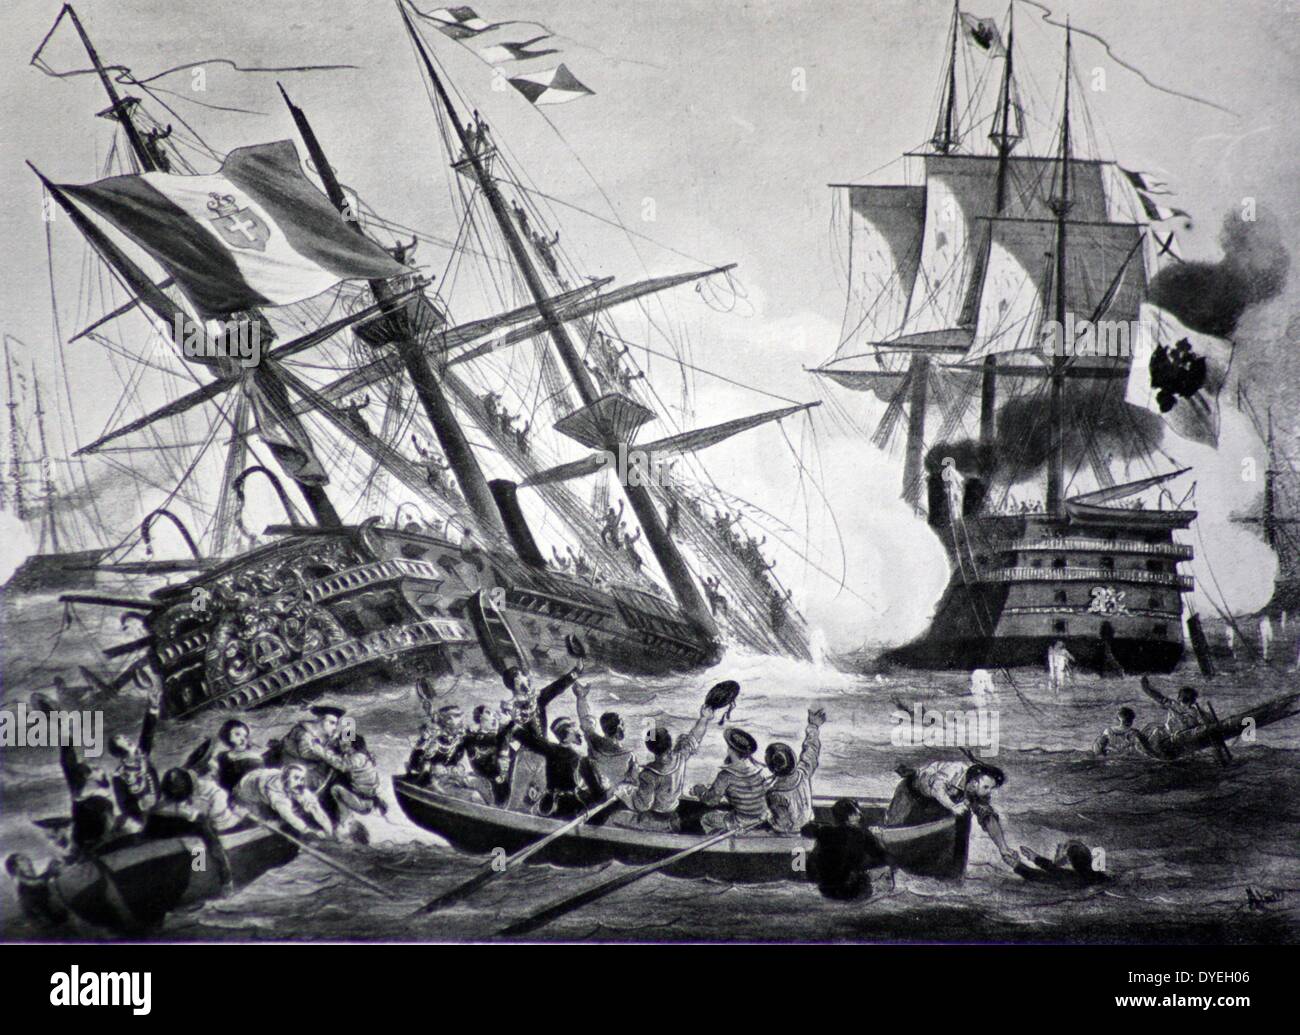 La bataille de Lissa, juillet 1866. La chambre de tir les Autrichiens à Lissa et l'usage mortel qu'ils ont pris de la ram, a attiré l'attention du monde entier sur la première action entre les flottes de haute mer moderne. Banque D'Images